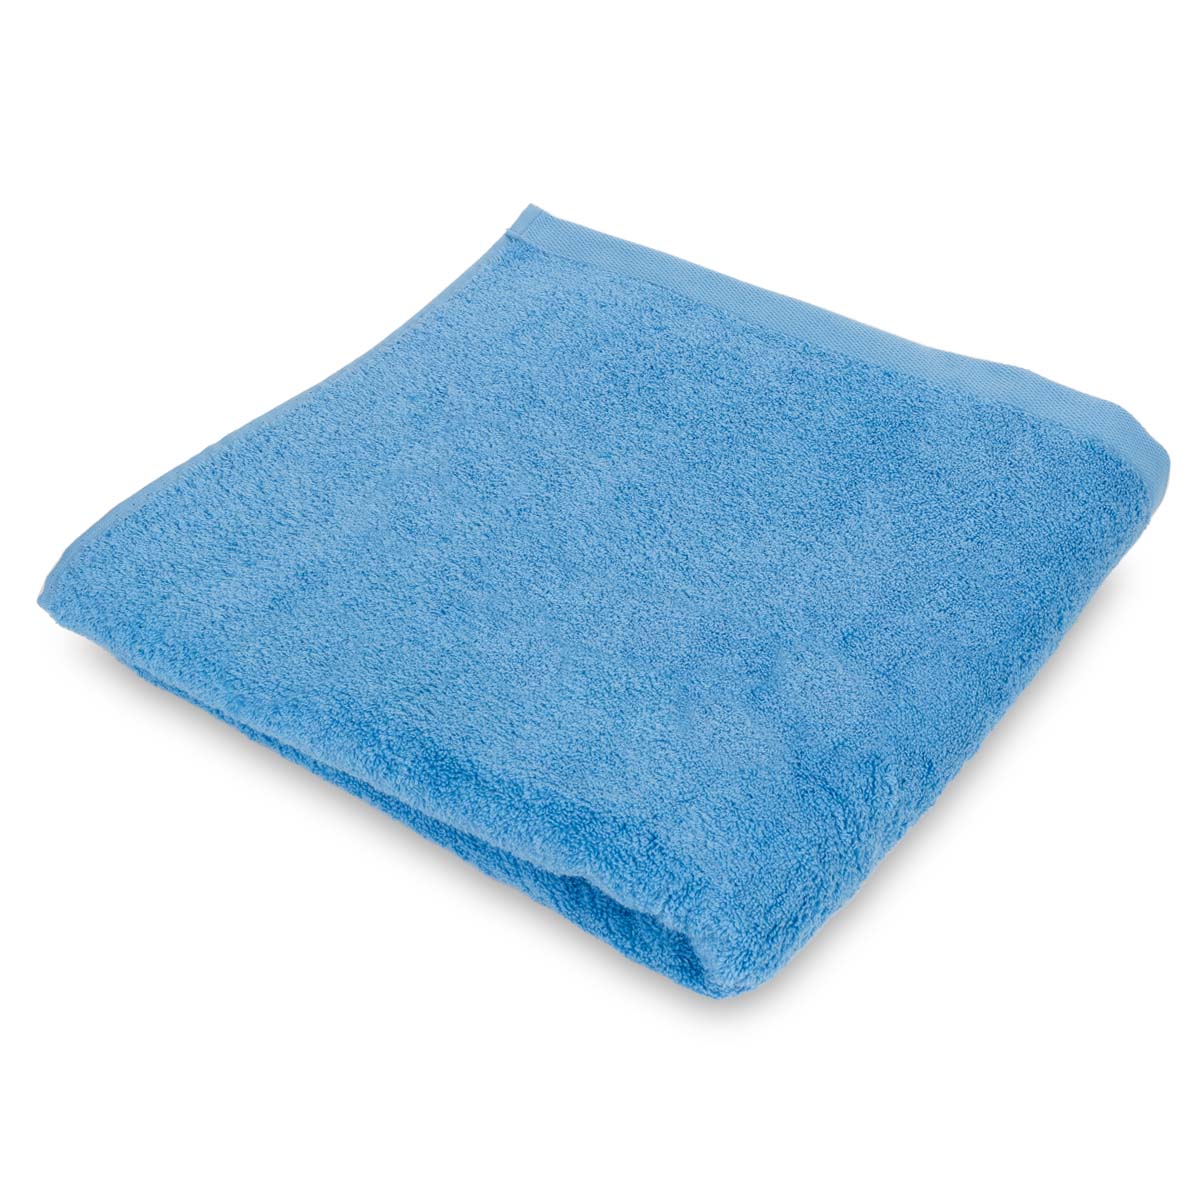 Полотенце махровое Lameirinho Aqua 70x140см, цвет голубой полотенце модерн голубой р 70х140